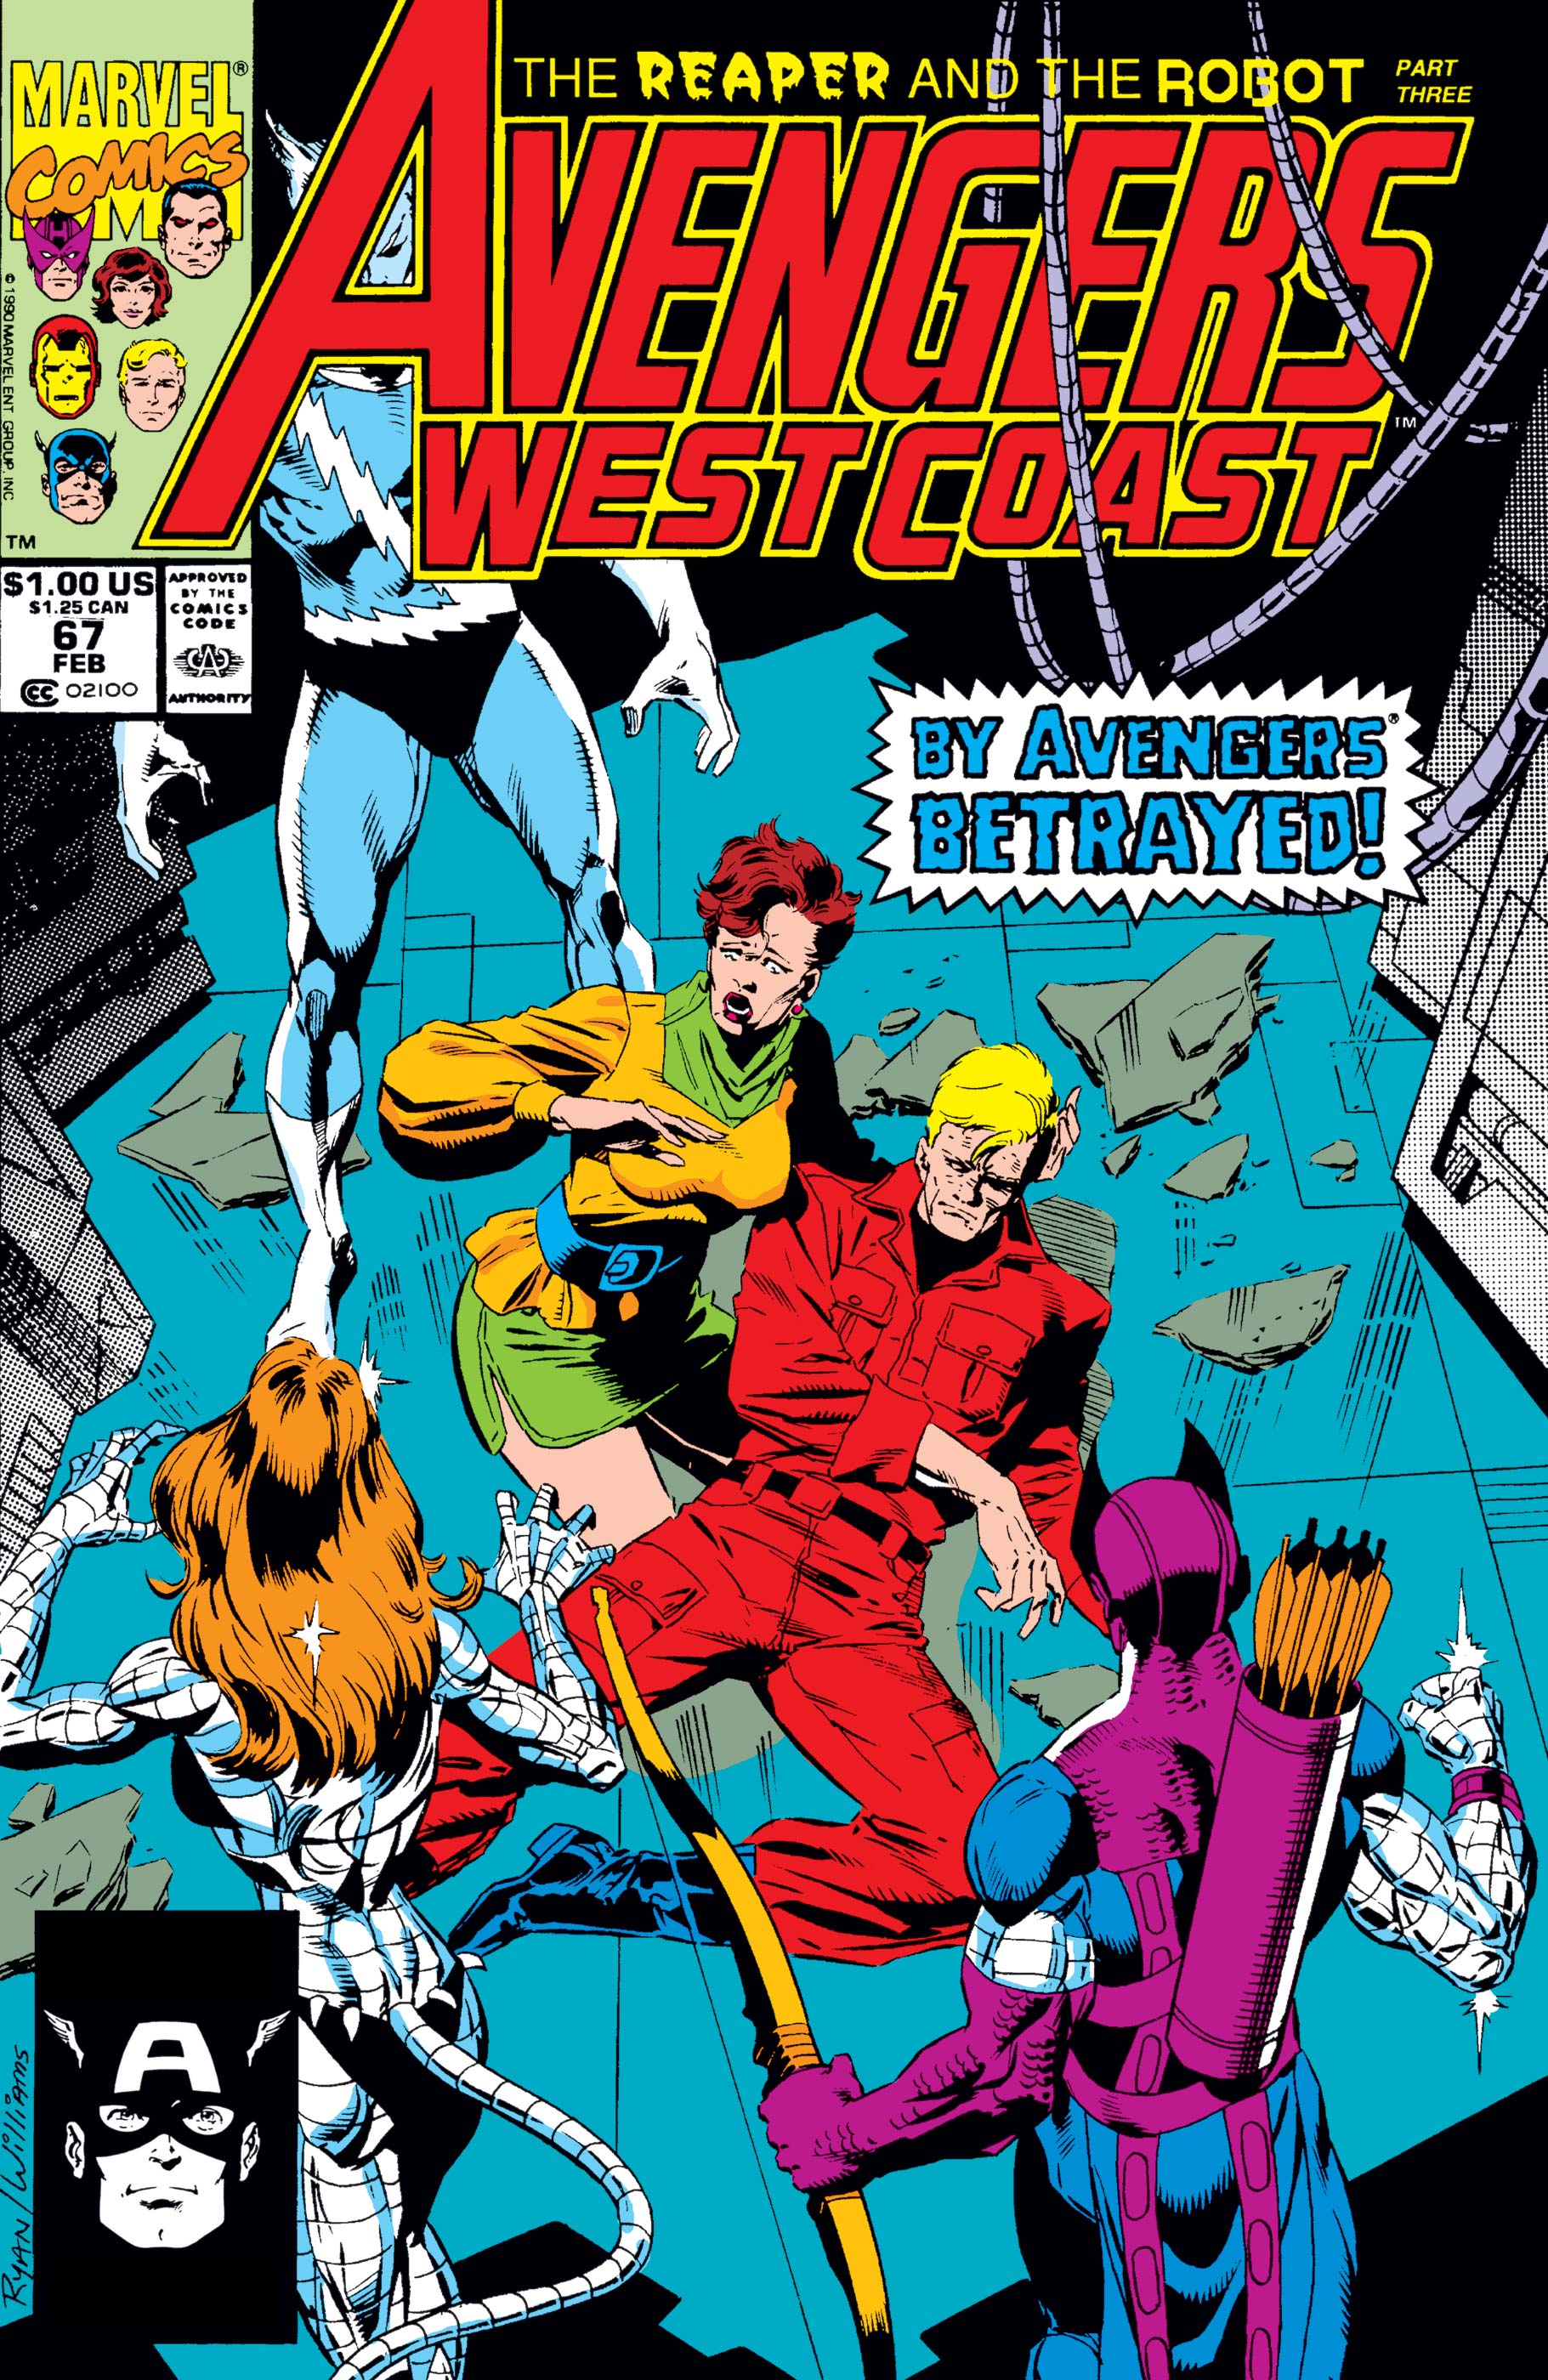 West Coast Avengers (1985) #67